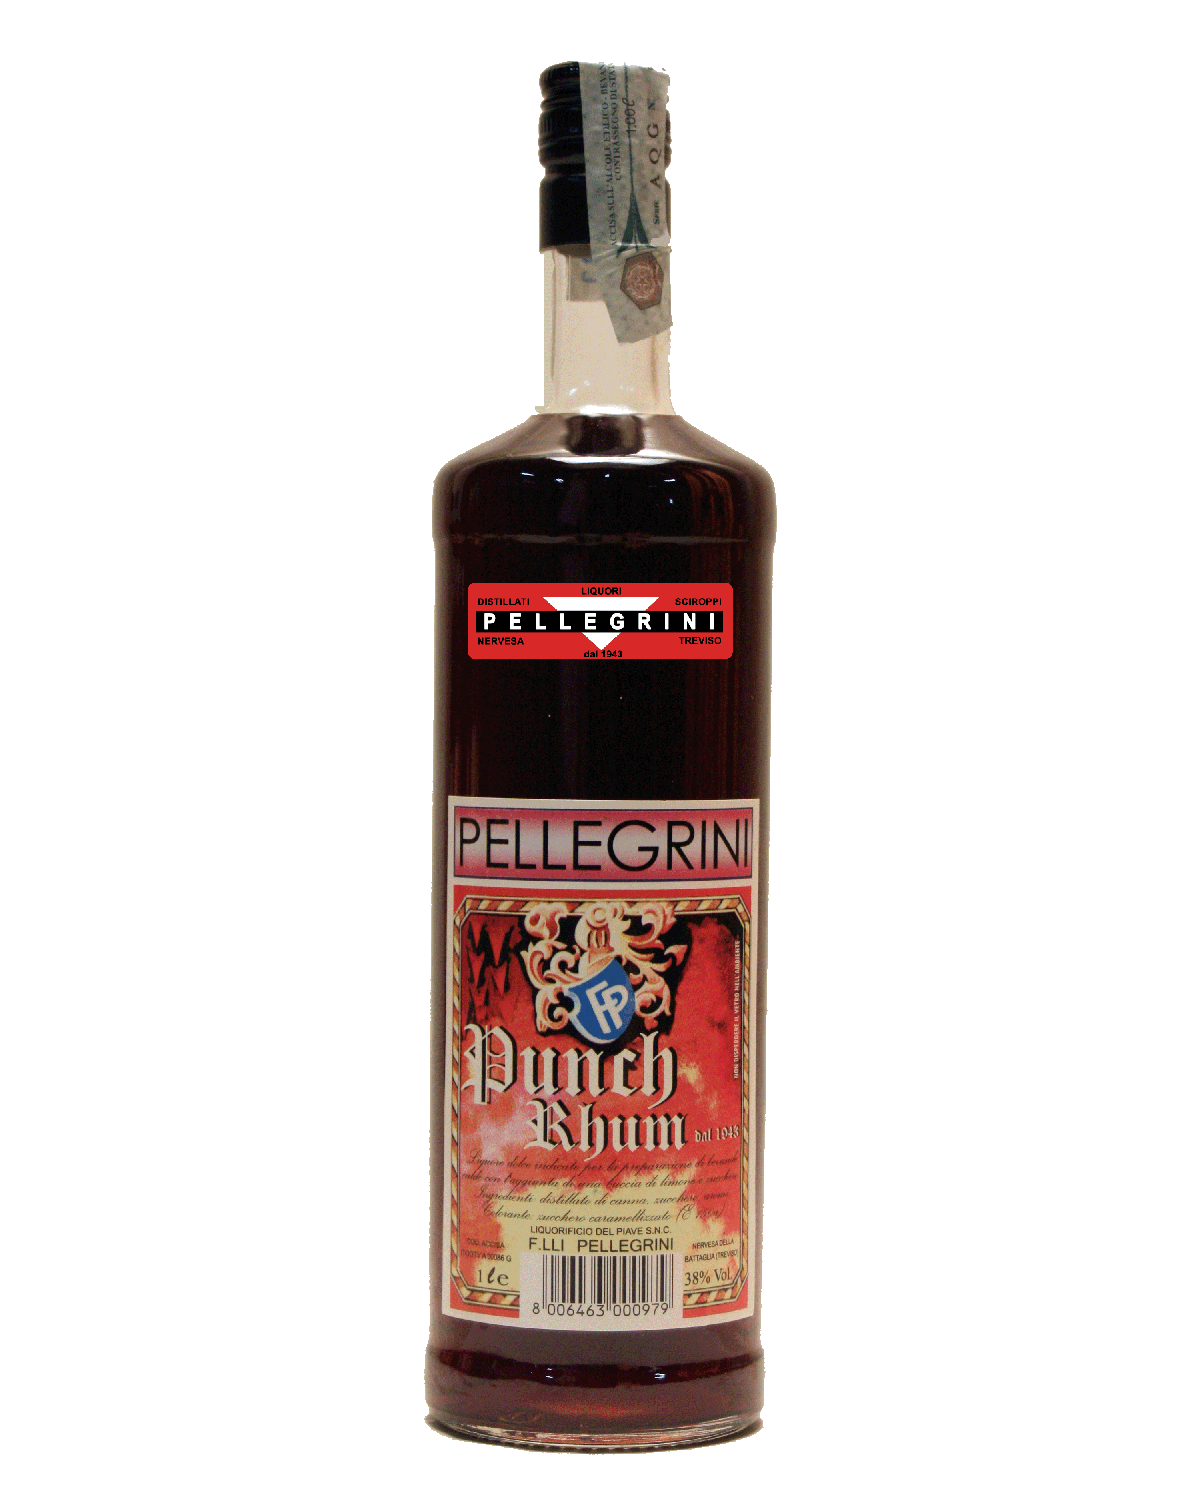 Punch Rum